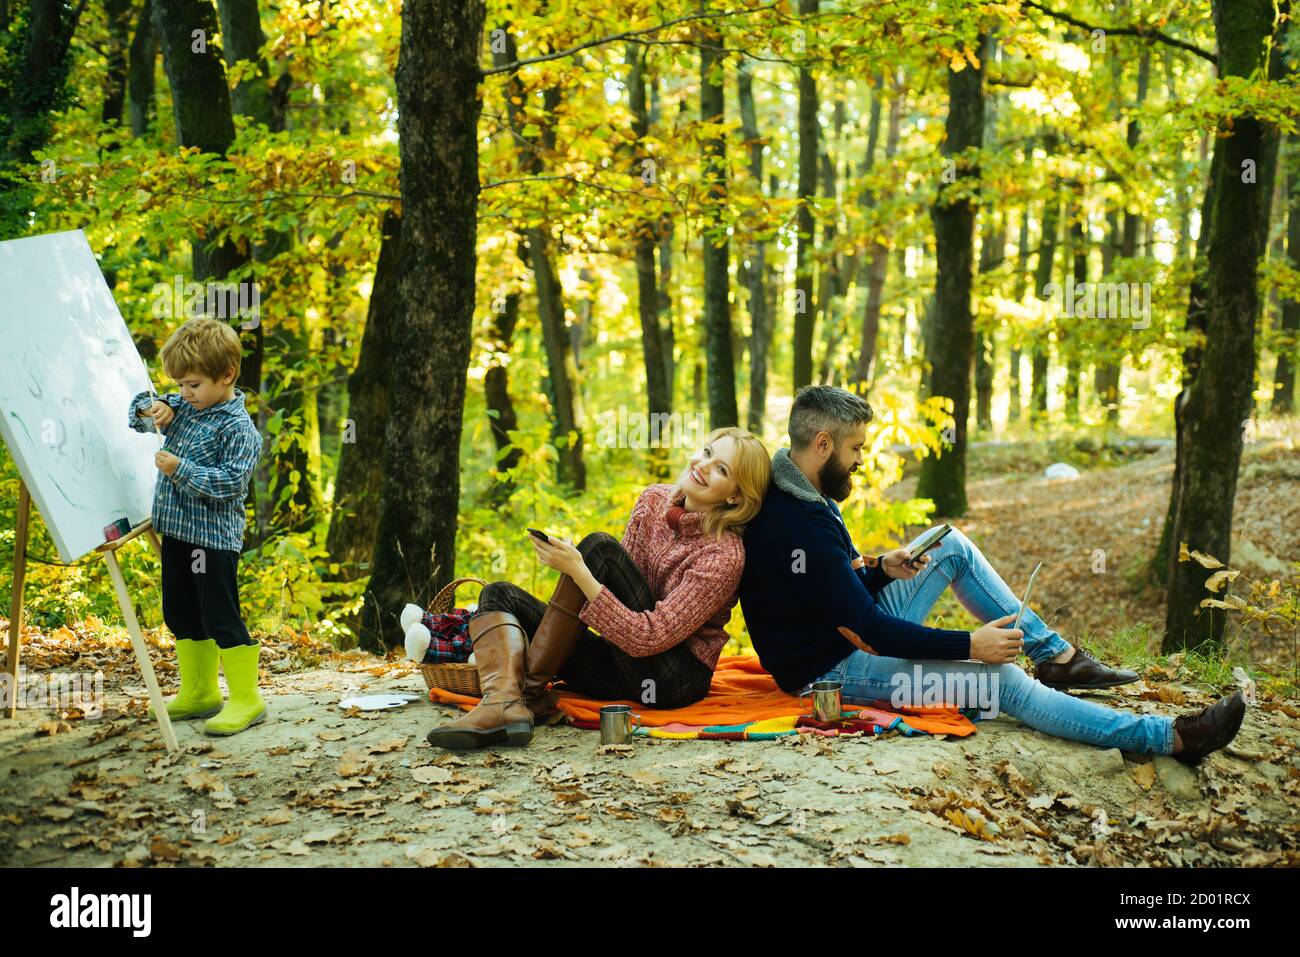 Schöne junge lächelnde Mutter sitzt auf Picknick-Decke mit ihrem entzückenden Mann, während kleine Kind malt mit Bürsten und Zeichnung Staffelei. Glücklich Stockfoto